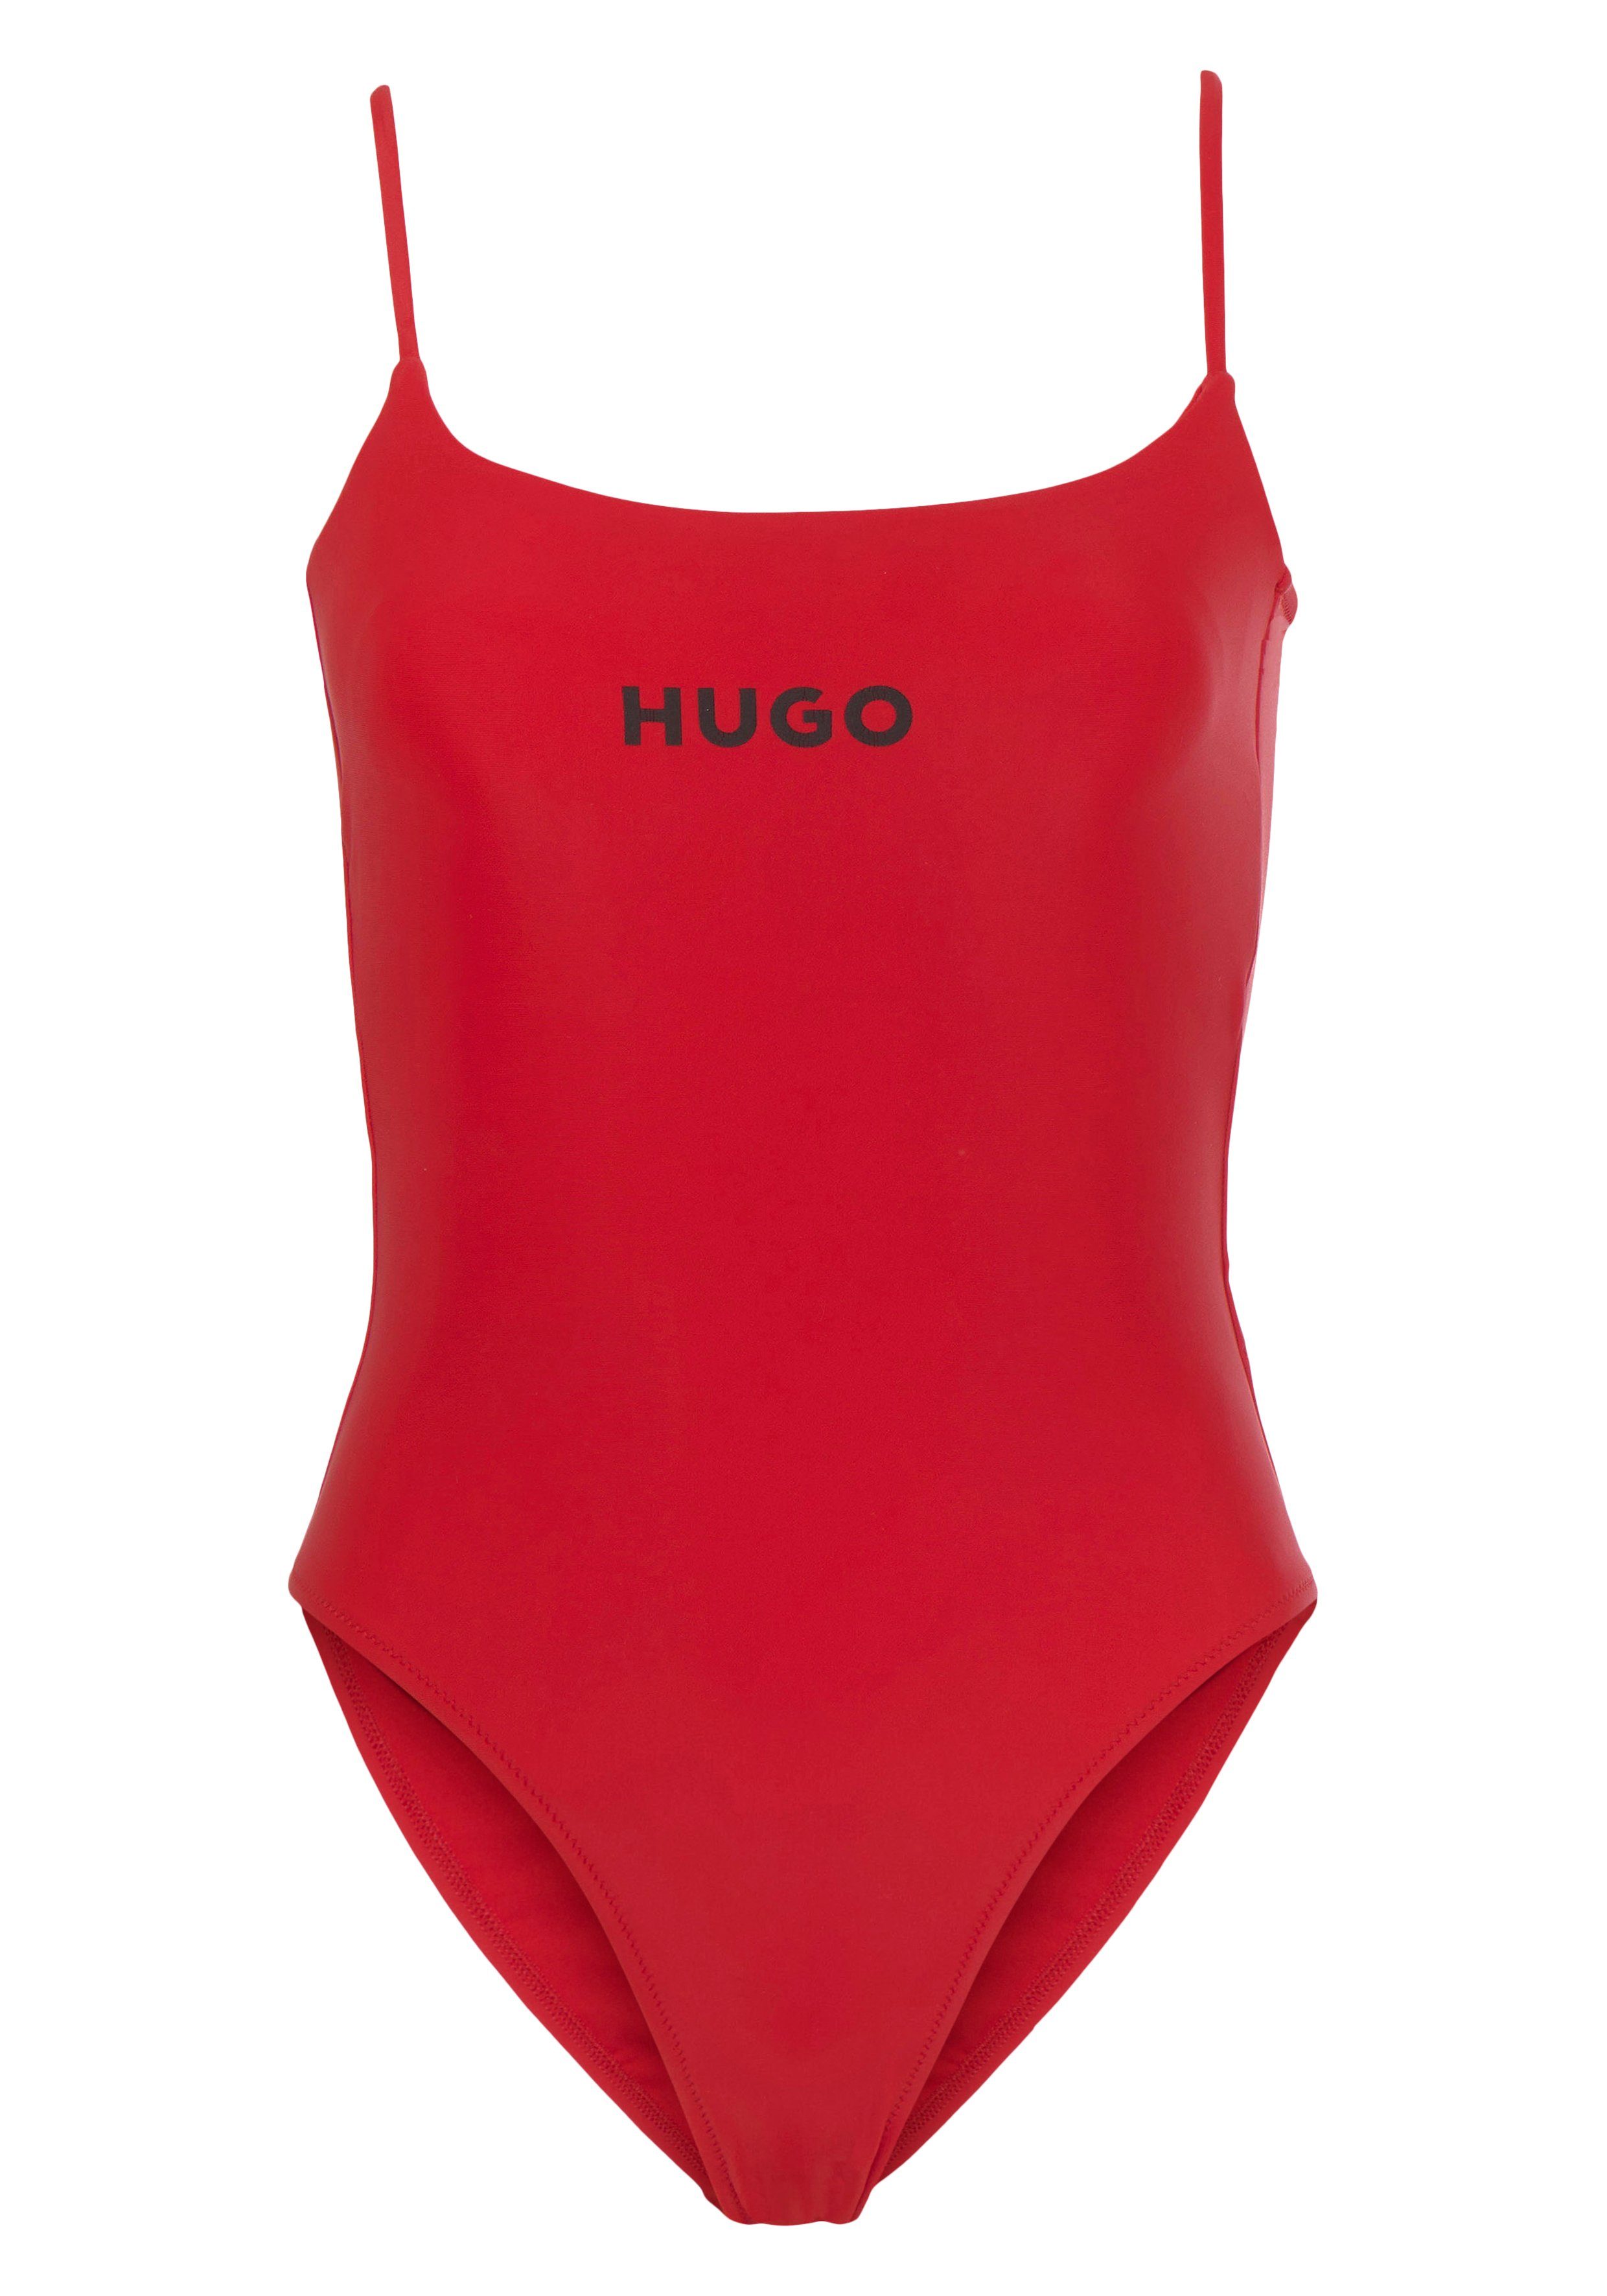 Verpassen Sie es nicht mit PURE_SWIMSUIT Badeanzug Bright_Pink Logoschriftzug HUGO